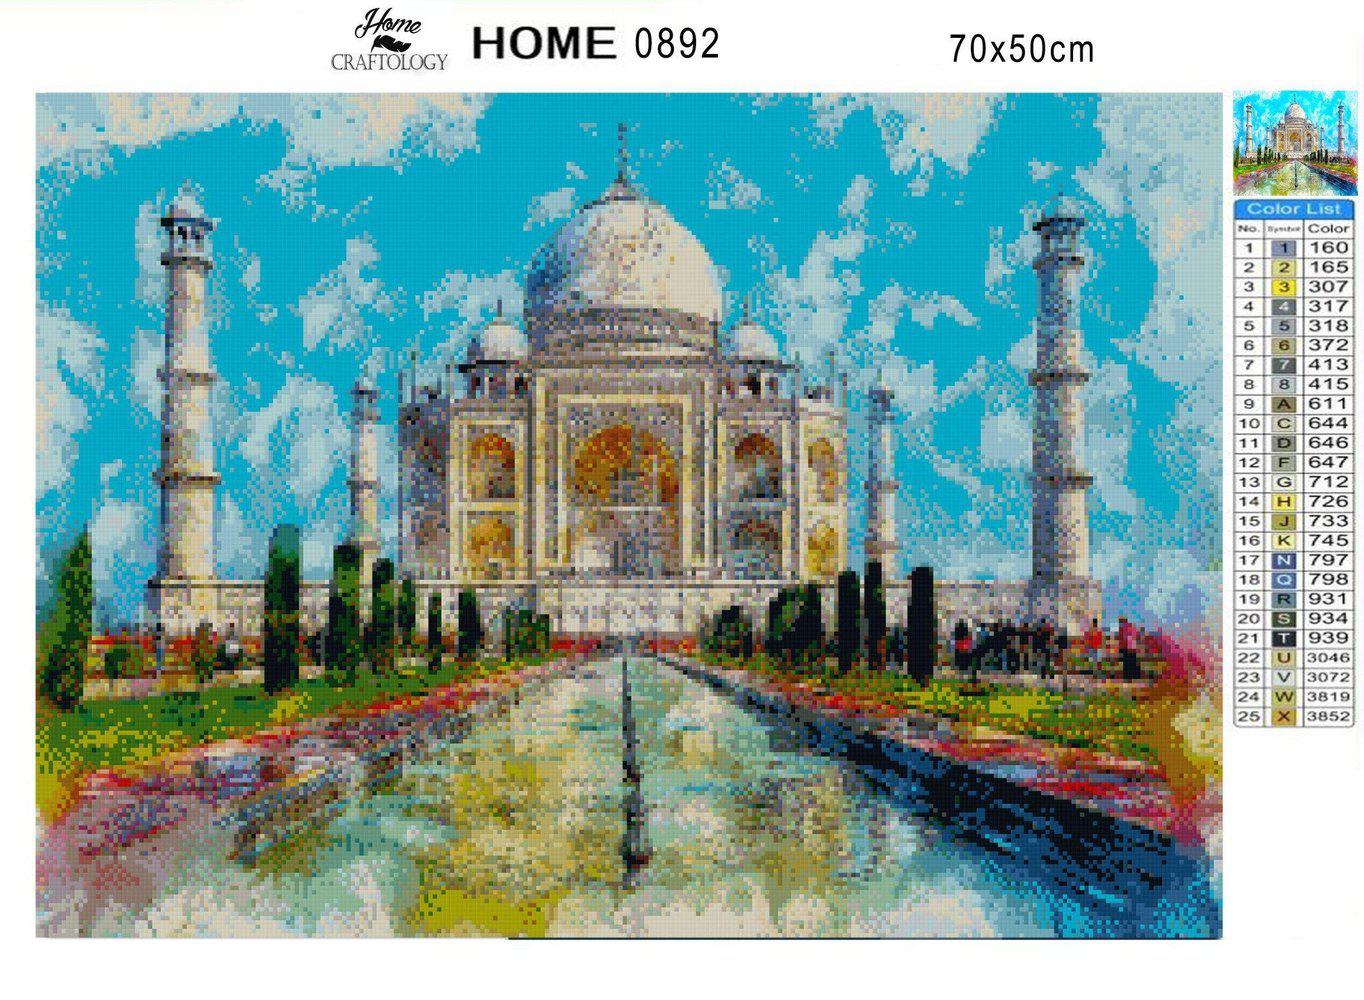 Taj Mahal Painting - Diamond Painting Kit - Home Craftology